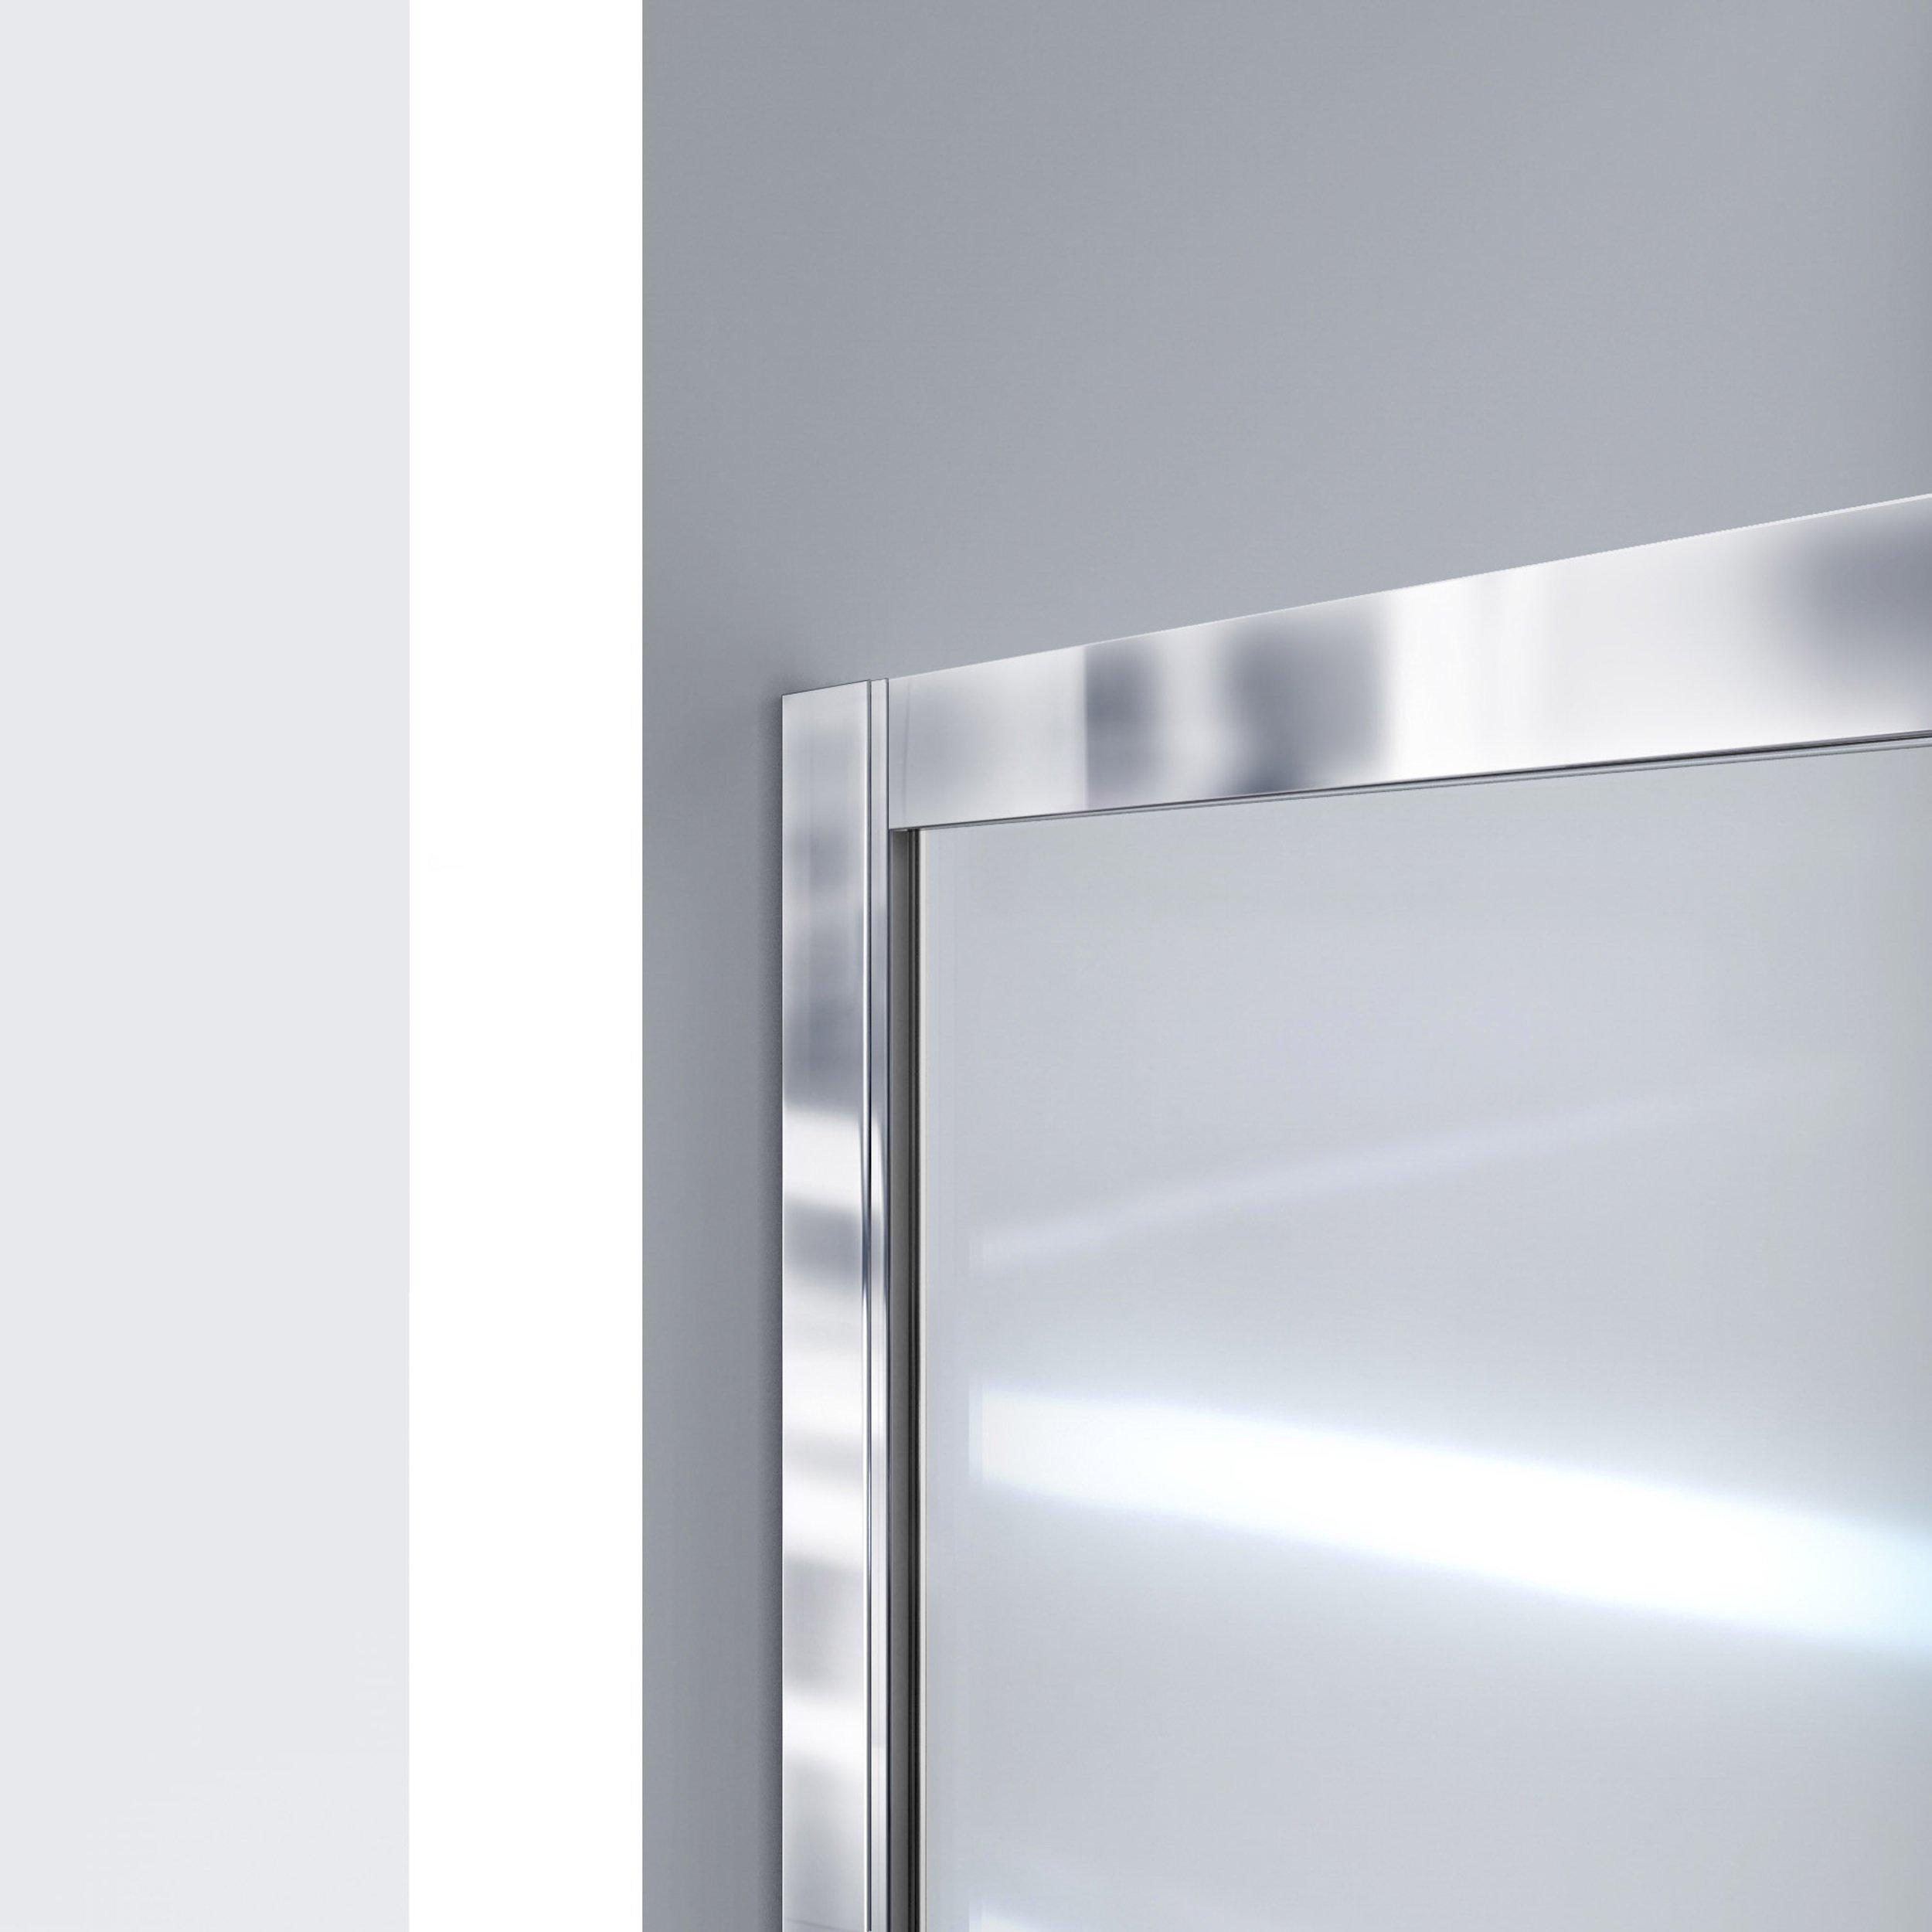 Infinity-Z Orb Semi-Frameless Shower Door